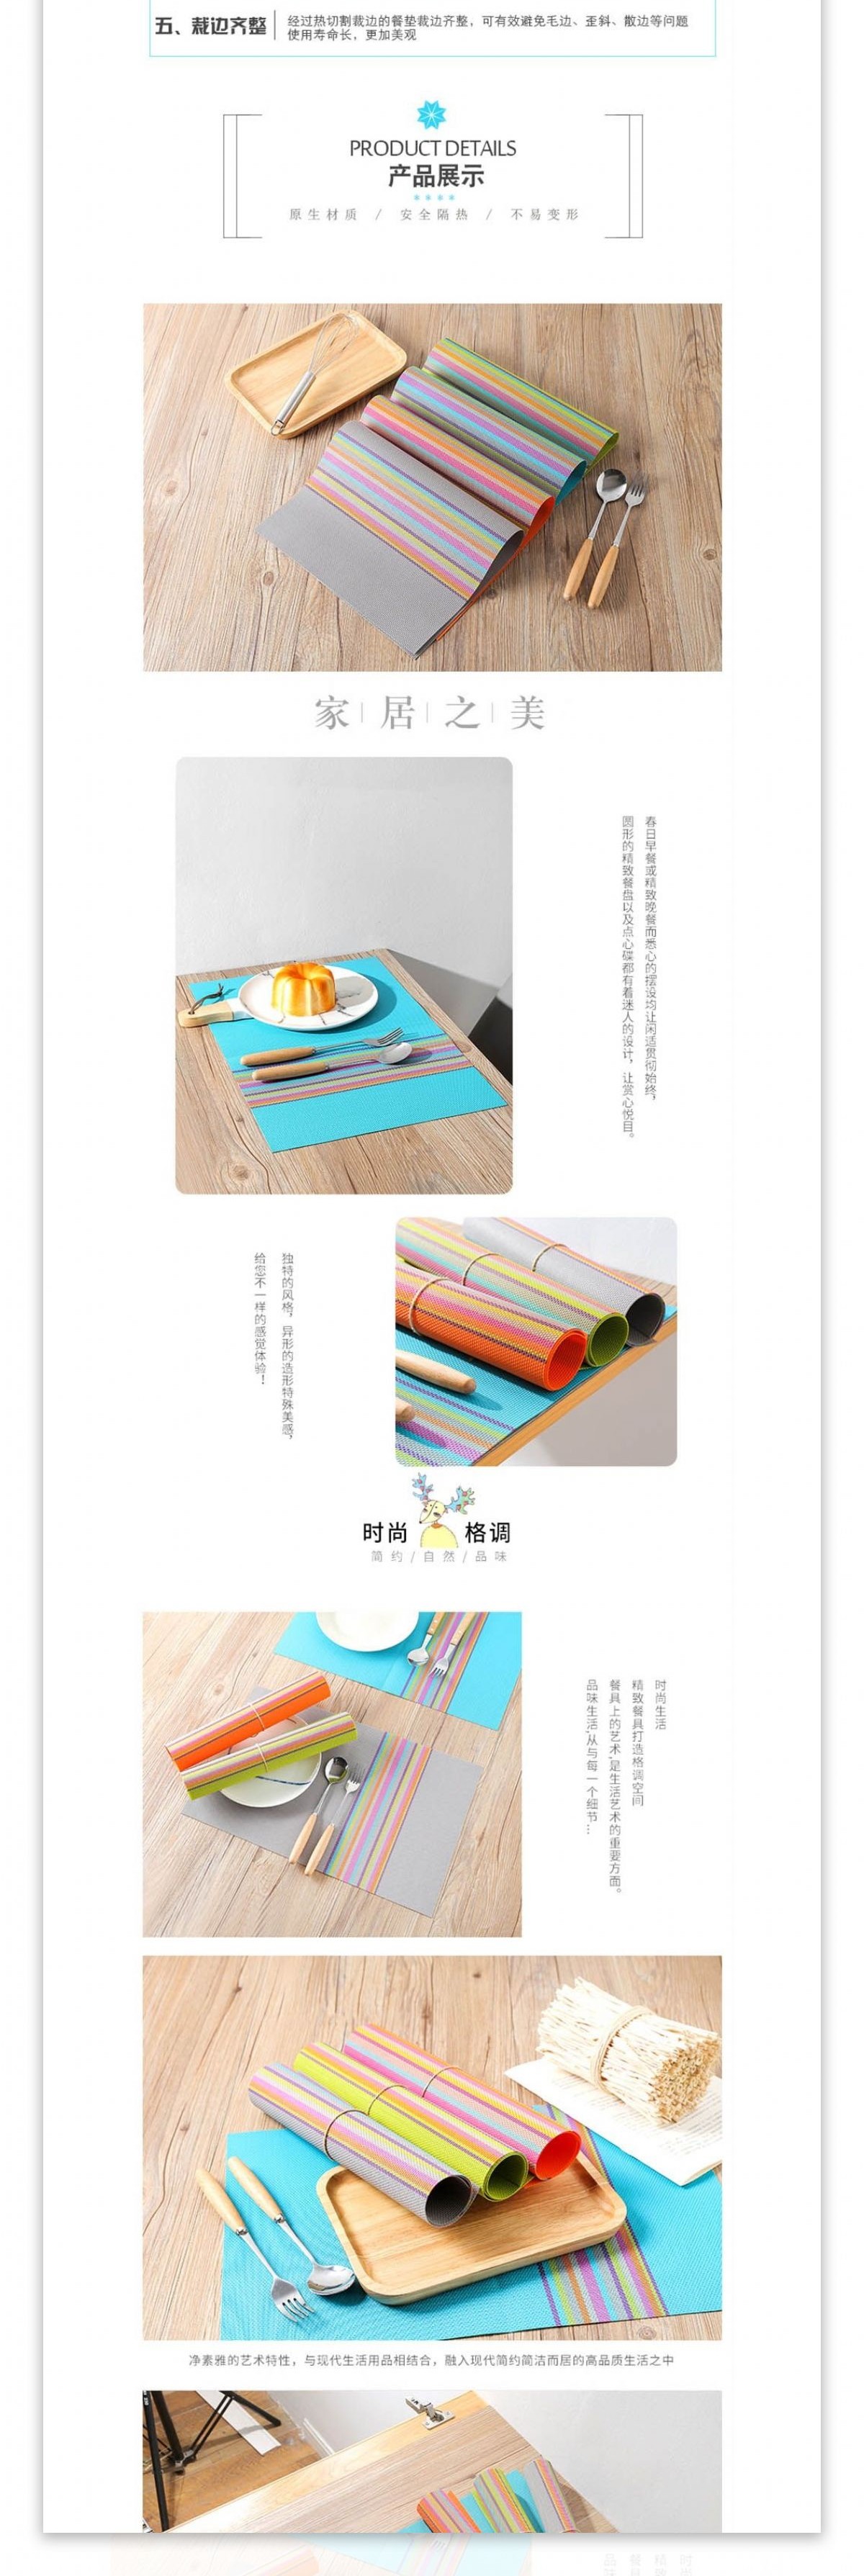 创意彩虹餐垫隔热垫详情模版